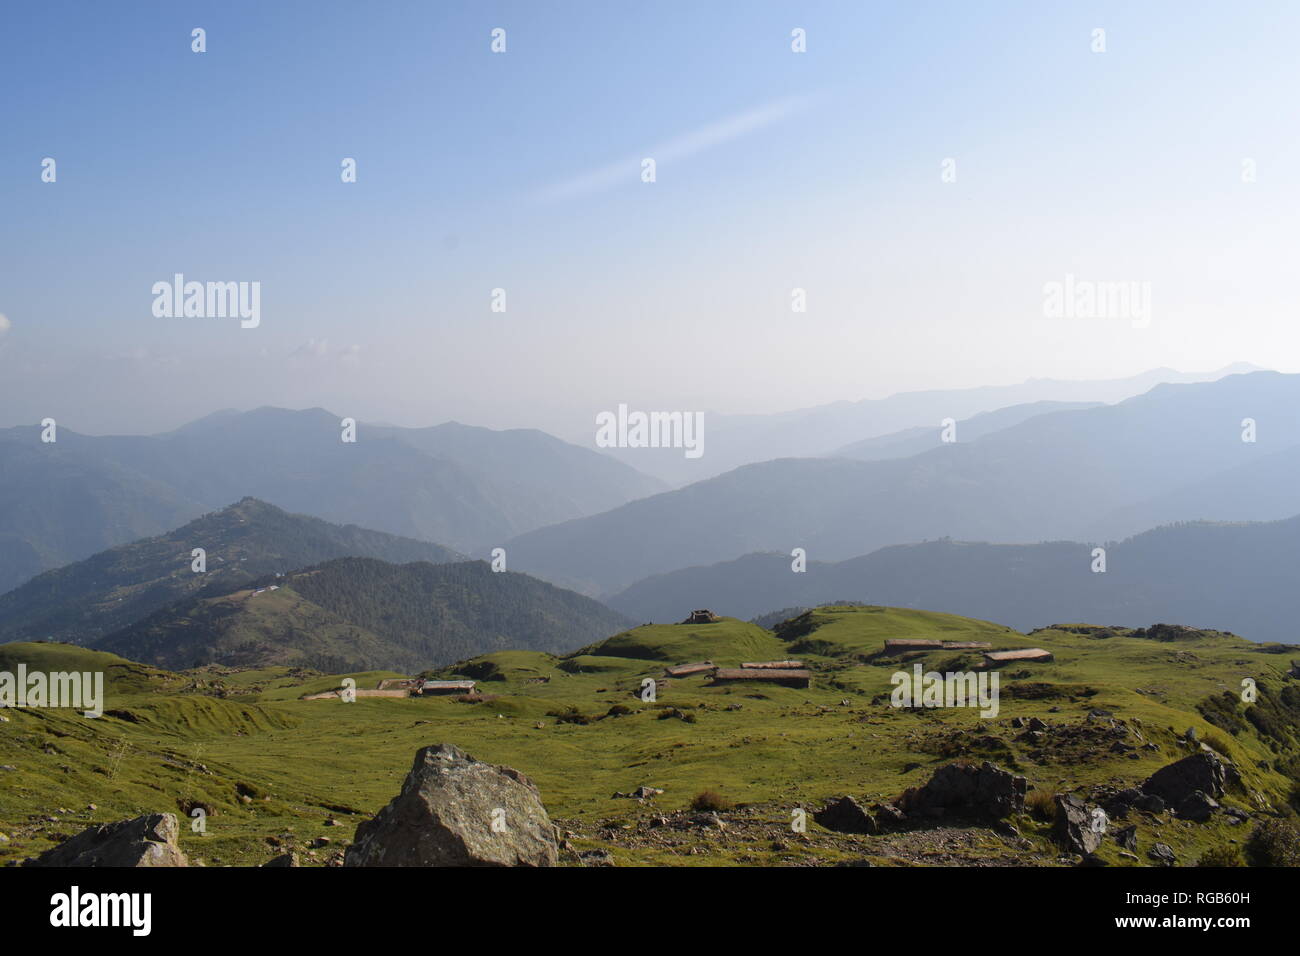 De beaux paysages de montagnes de Pir Panjaal, au Cachemire Banque D'Images